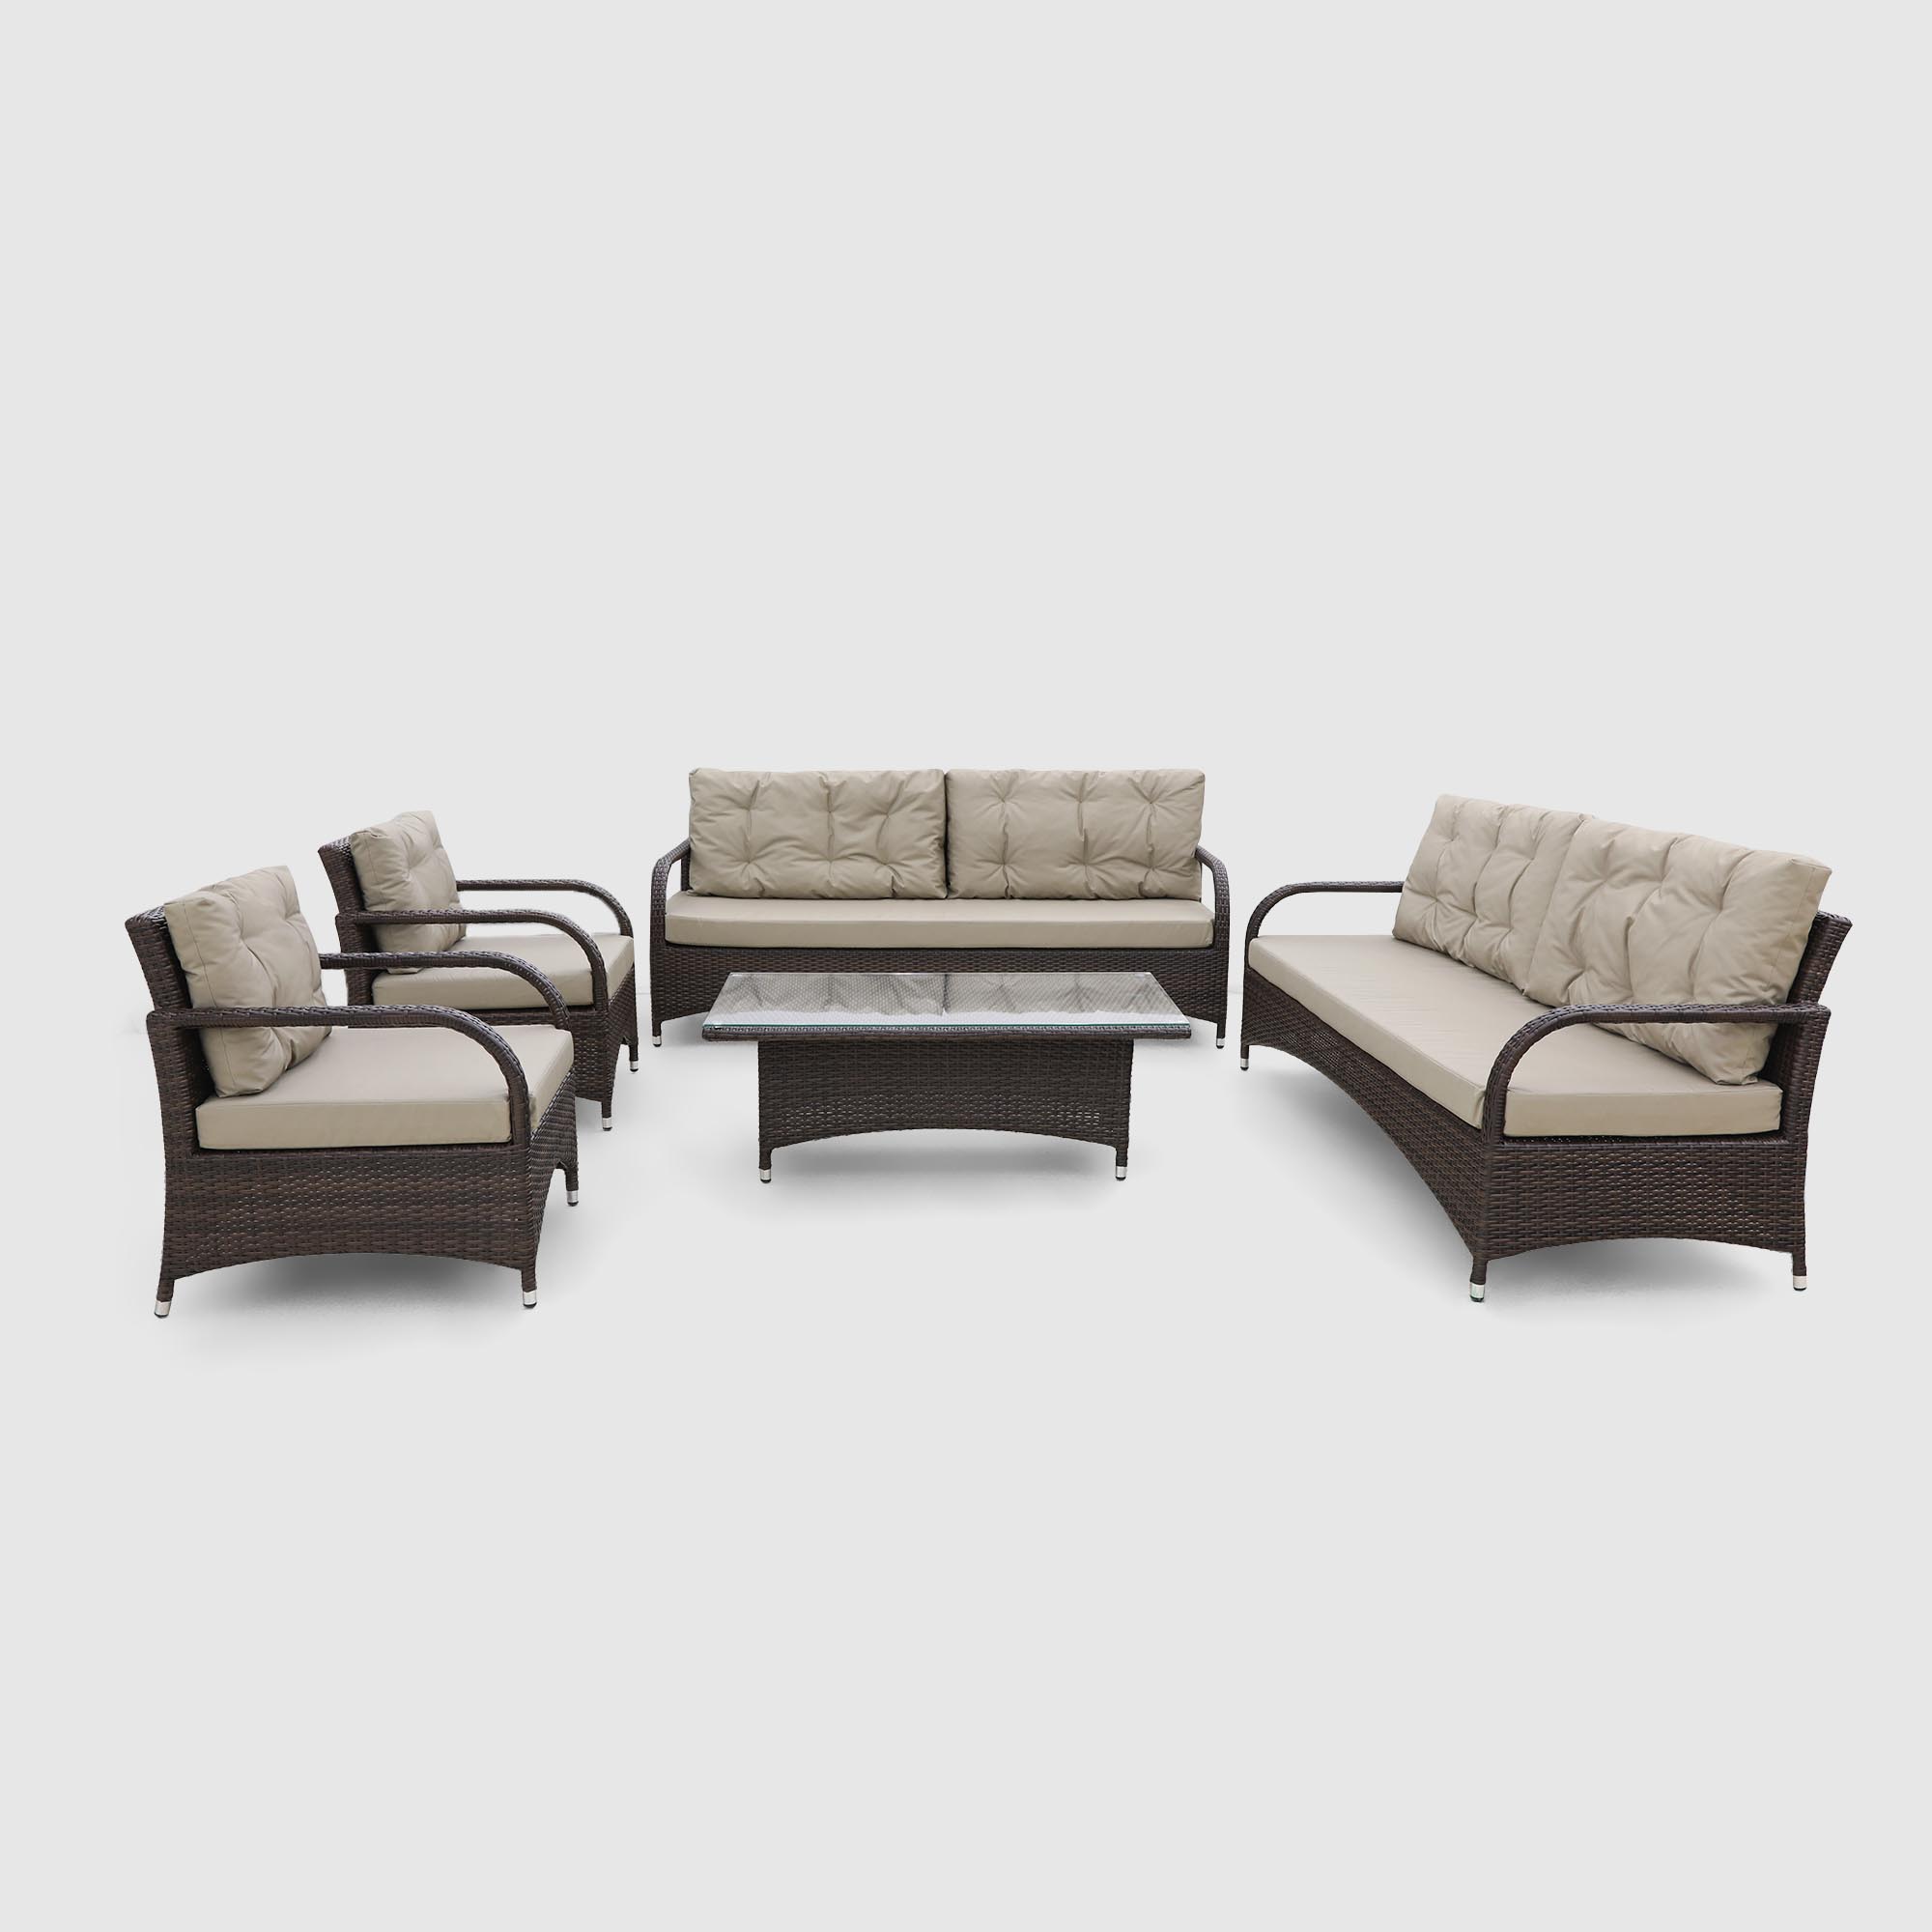 Комплект мебели Ns Rattan Family коричневый с бежевым 5 предметов, цвет бежевый, размер 190х75х71